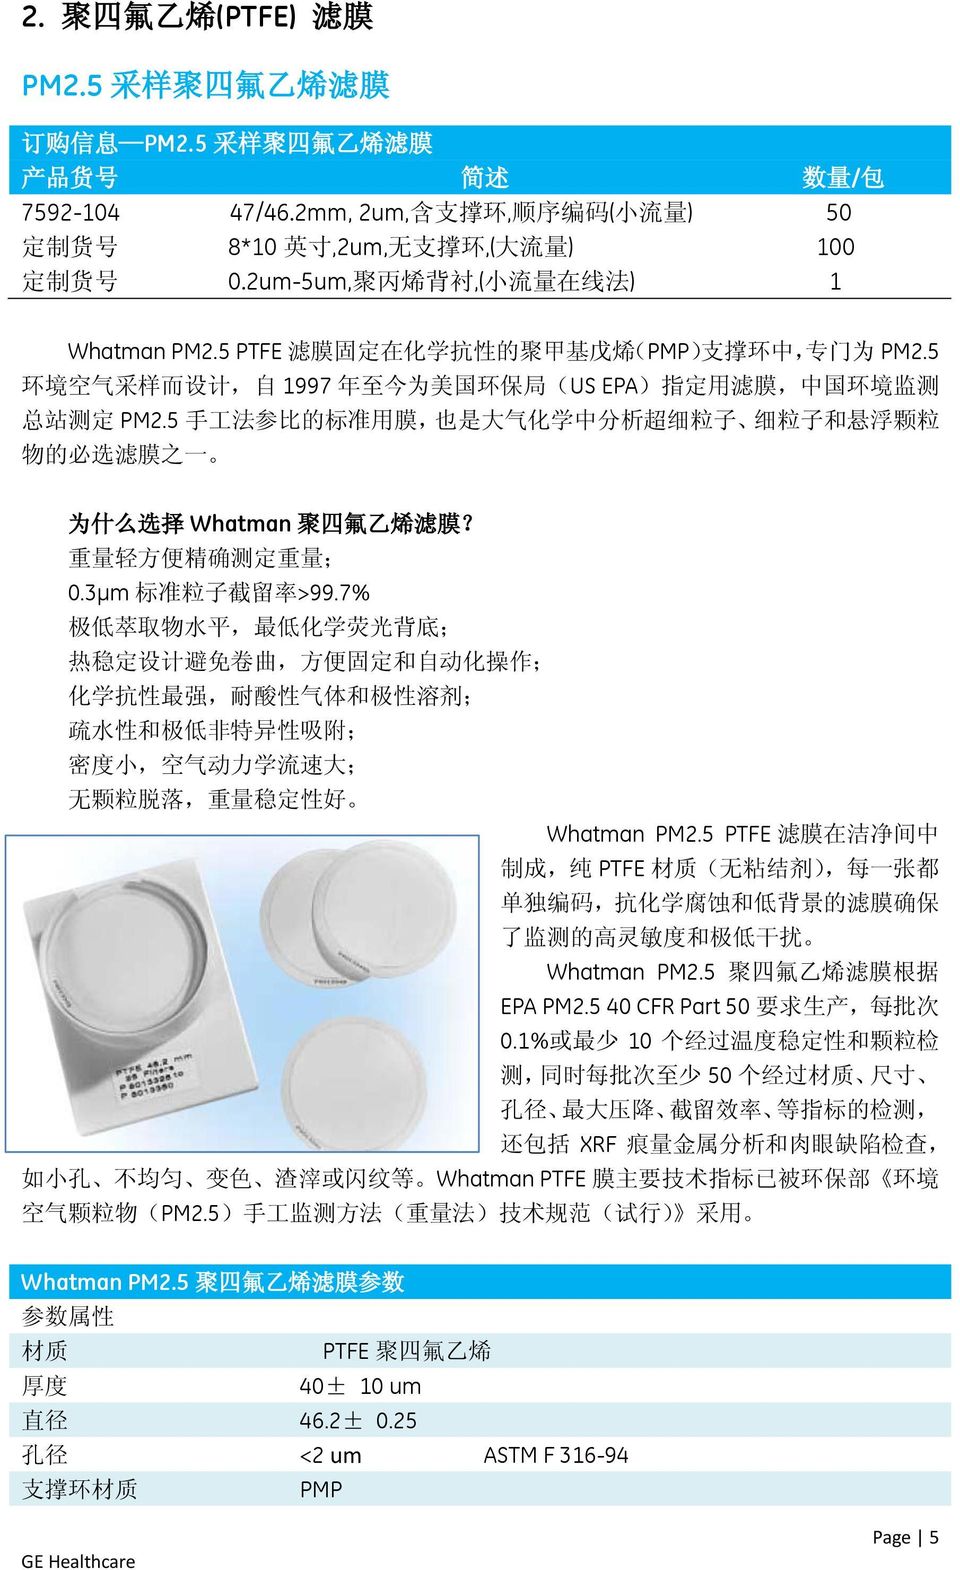 5 PTFE 滤 膜 固 定 在 化 学 抗 性 的 聚 甲 基 戊 烯 (PMP) 支 撑 环 中, 专 门 为 PM2.5 环 境 空 气 采 样 而 设 计, 自 1997 年 至 今 为 美 国 环 保 局 (US EPA) 指 定 用 滤 膜, 中 国 环 境 监 测 总 站 测 定 PM2.